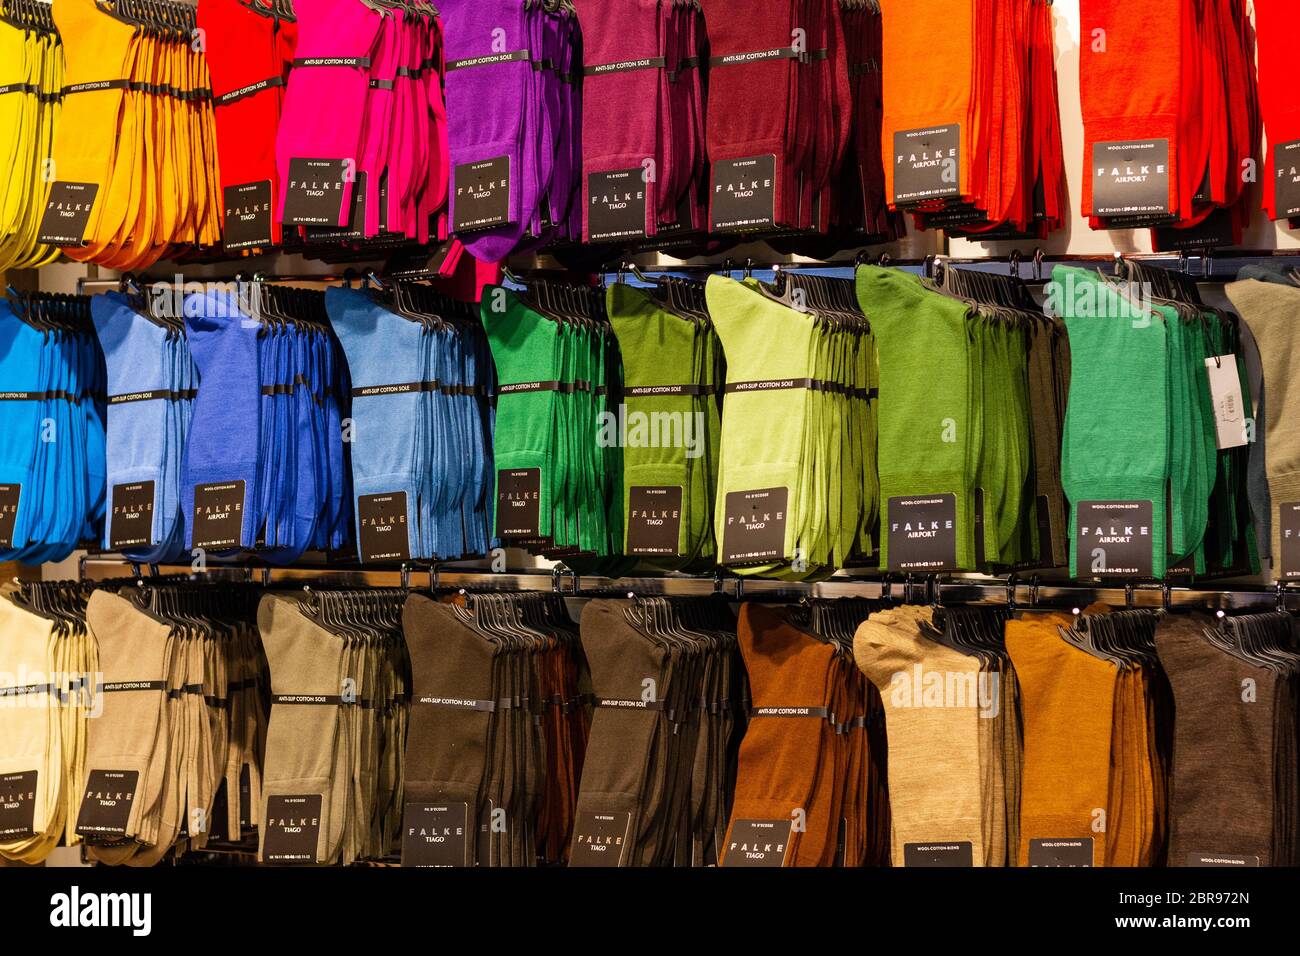 Schwechat, Austria. 2020/02/06. Calcetines de varios colores de la Marca Falke en una tienda en el aeropuerto de Viena. Foto de stock